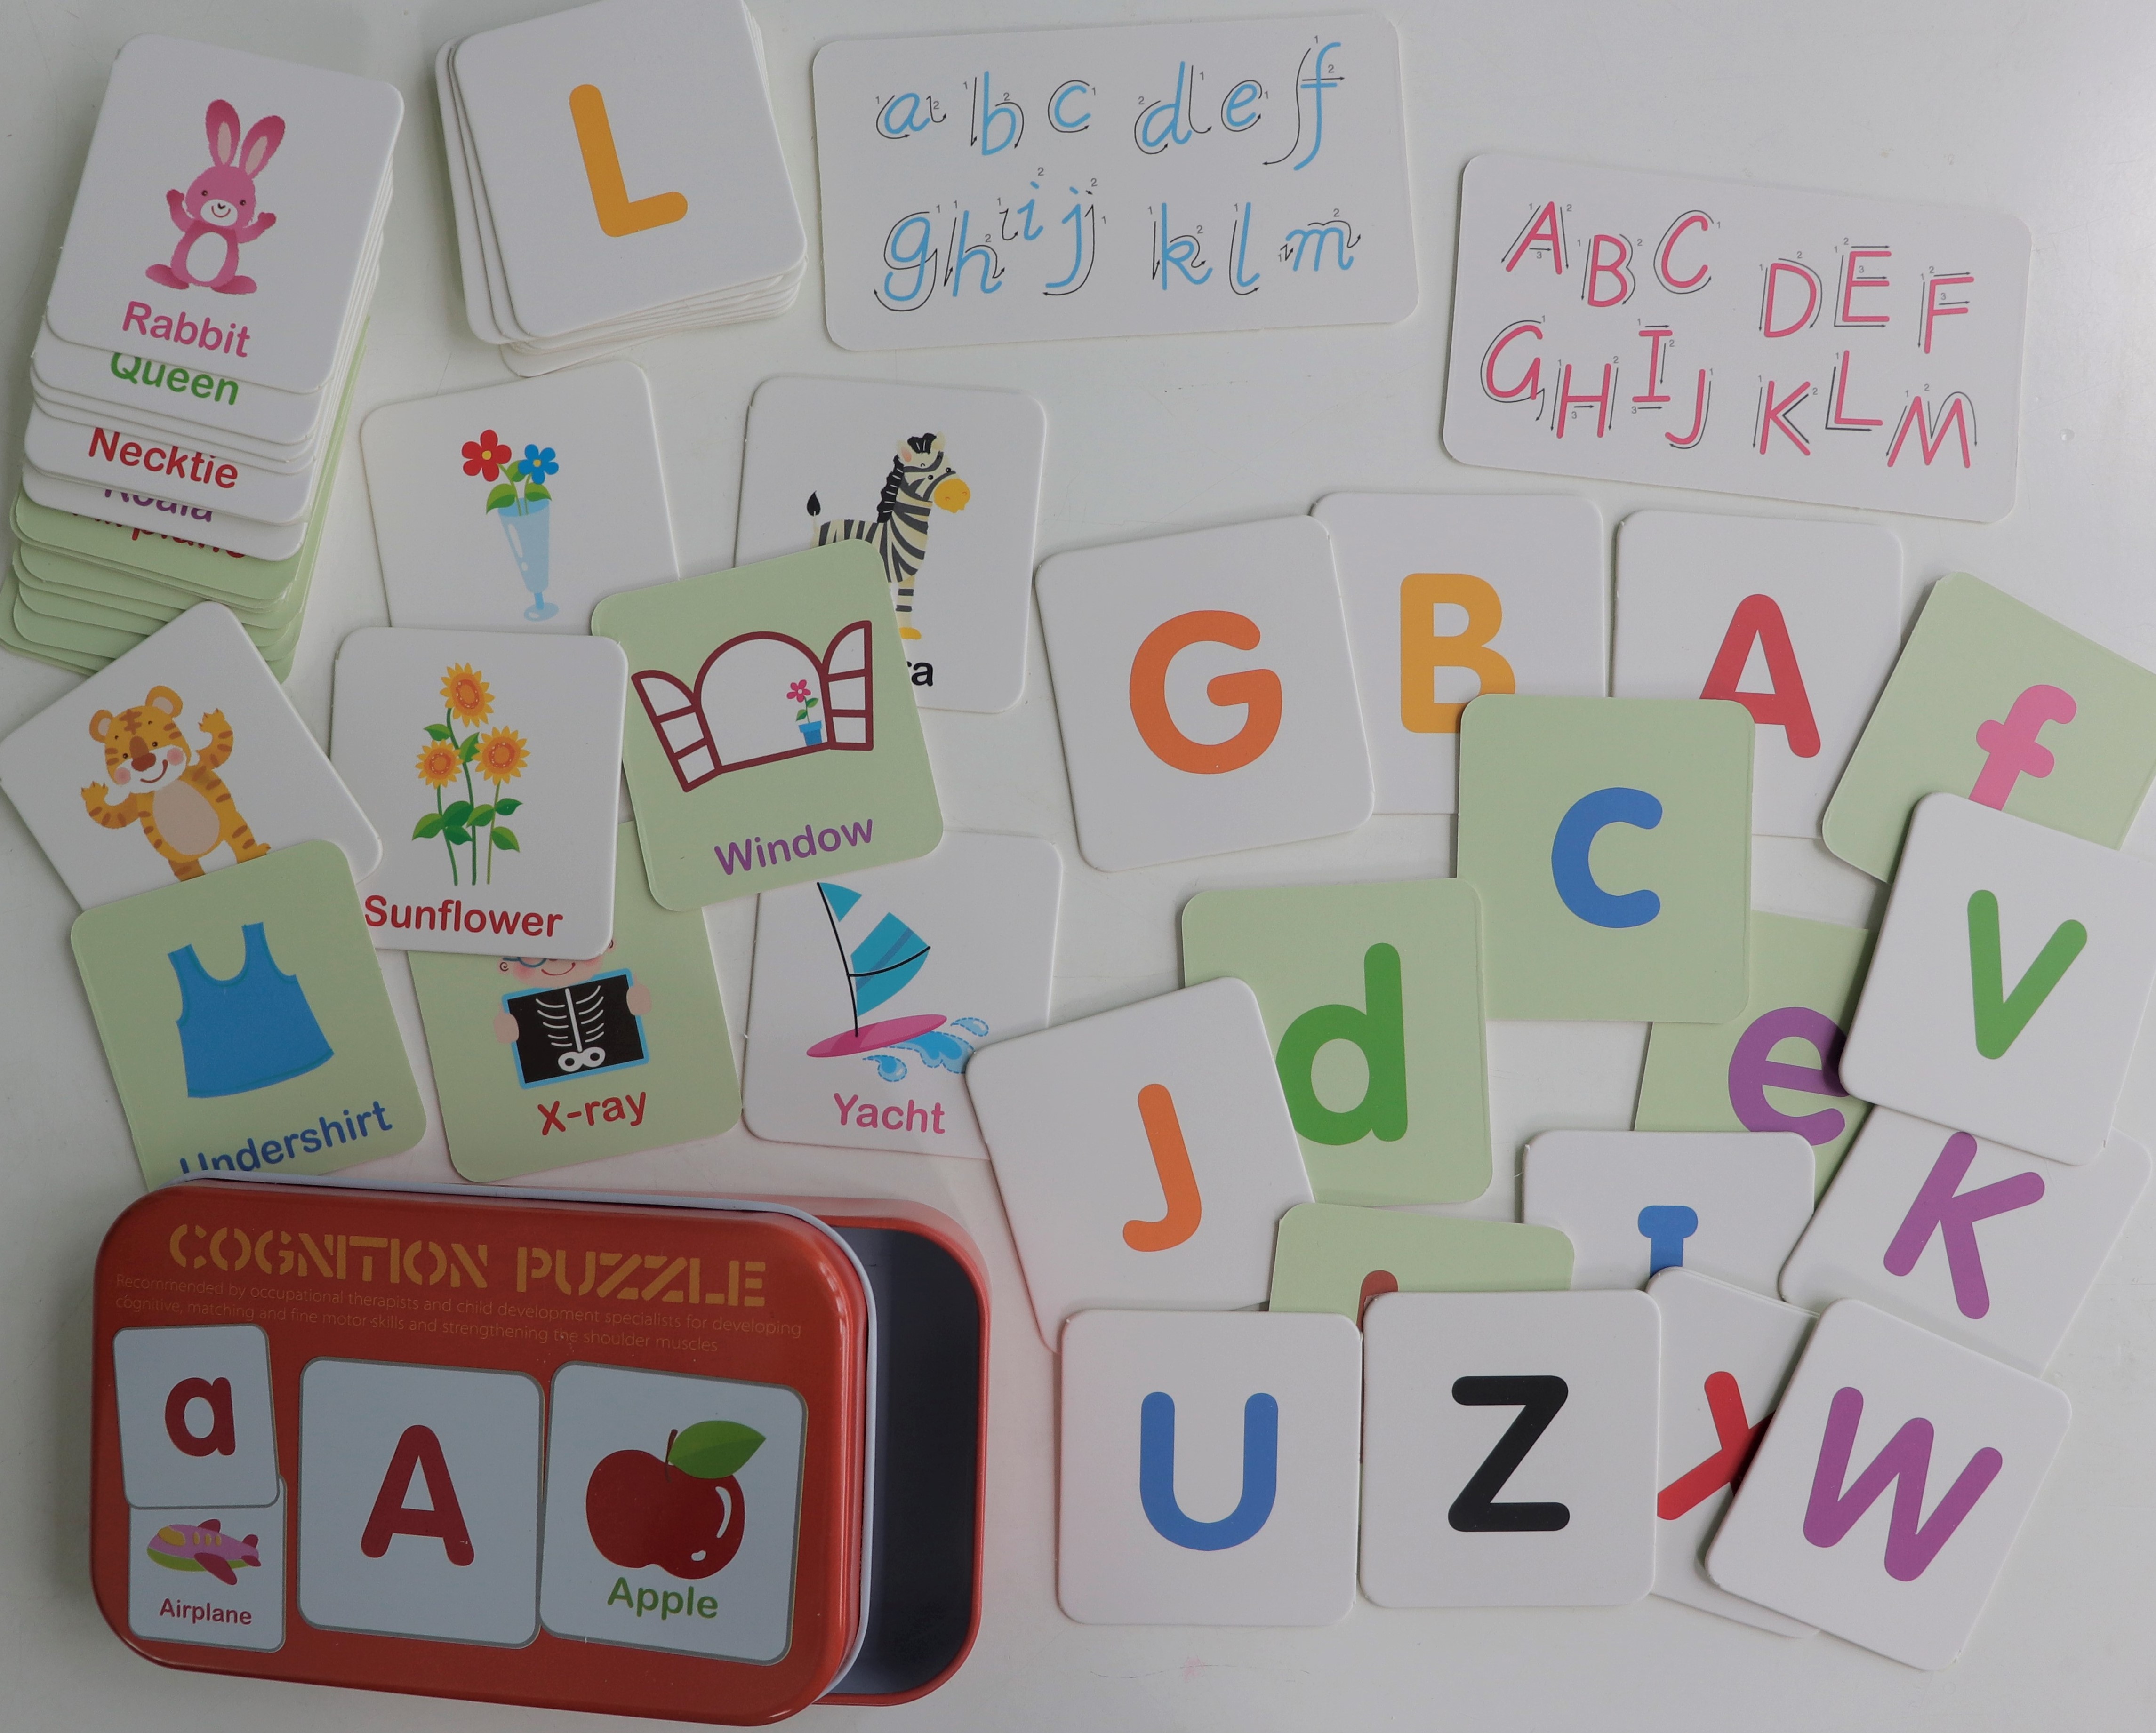 Cognition puzzle - Trò chơi nhận biết theo phương pháp giáo dục sớm cho trẻ em với các chủ đề bảng chữ cái, số đếm, màu sắc, hình dạng, đồ vật